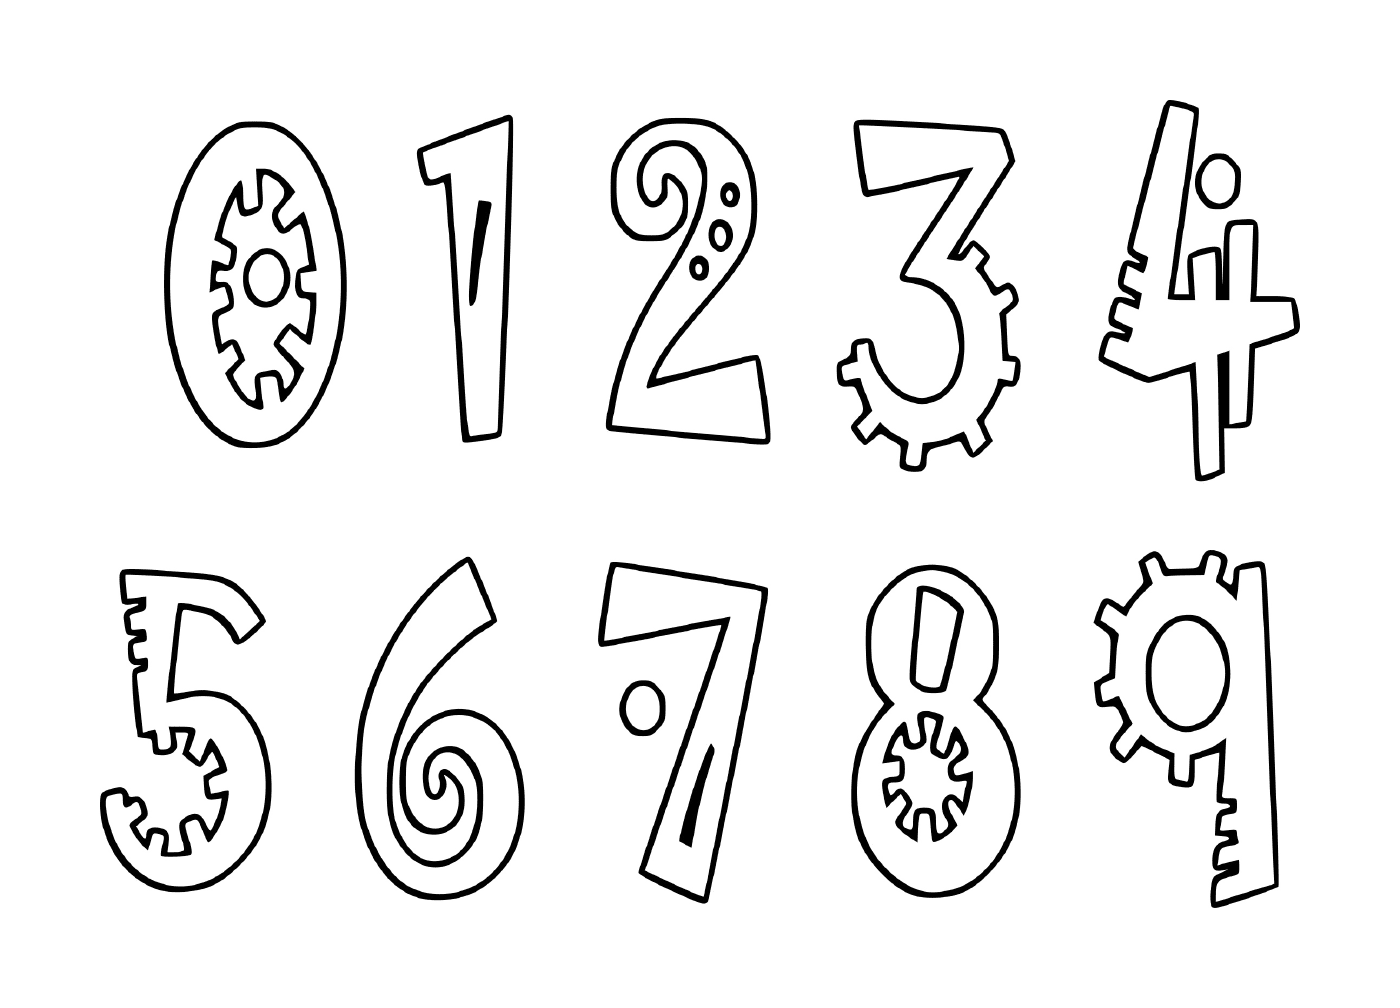  Conjunto de dígitos de zero a nove desenhados em tinta preta 